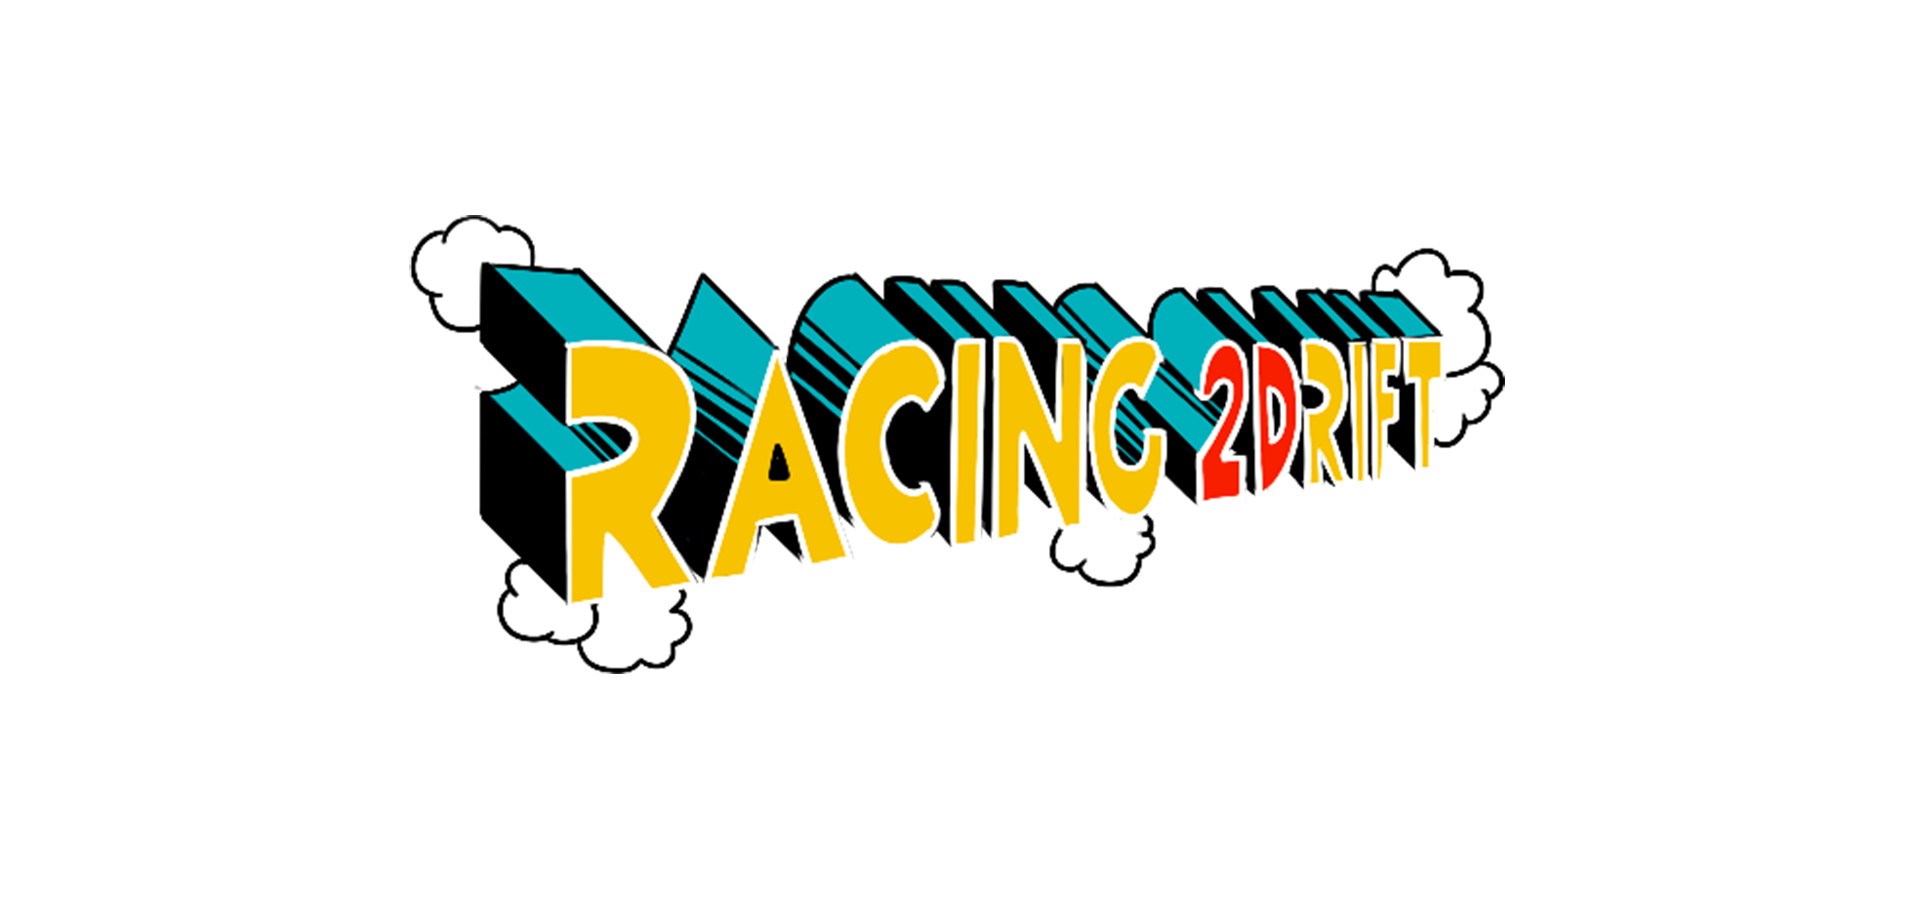 Racing 2Drift